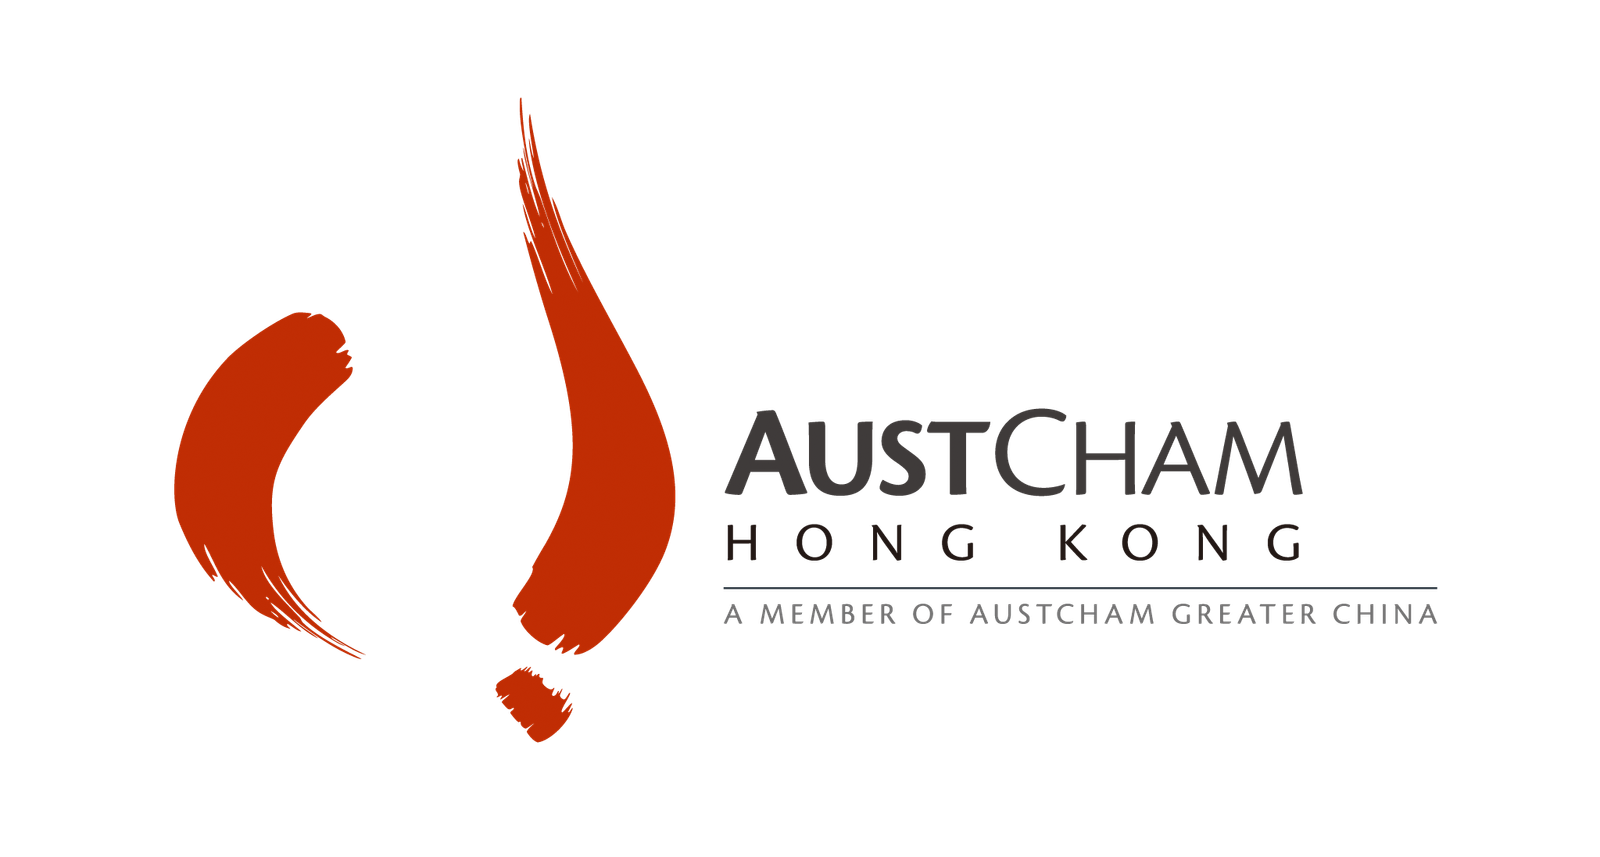 Australia Chamber company logo.